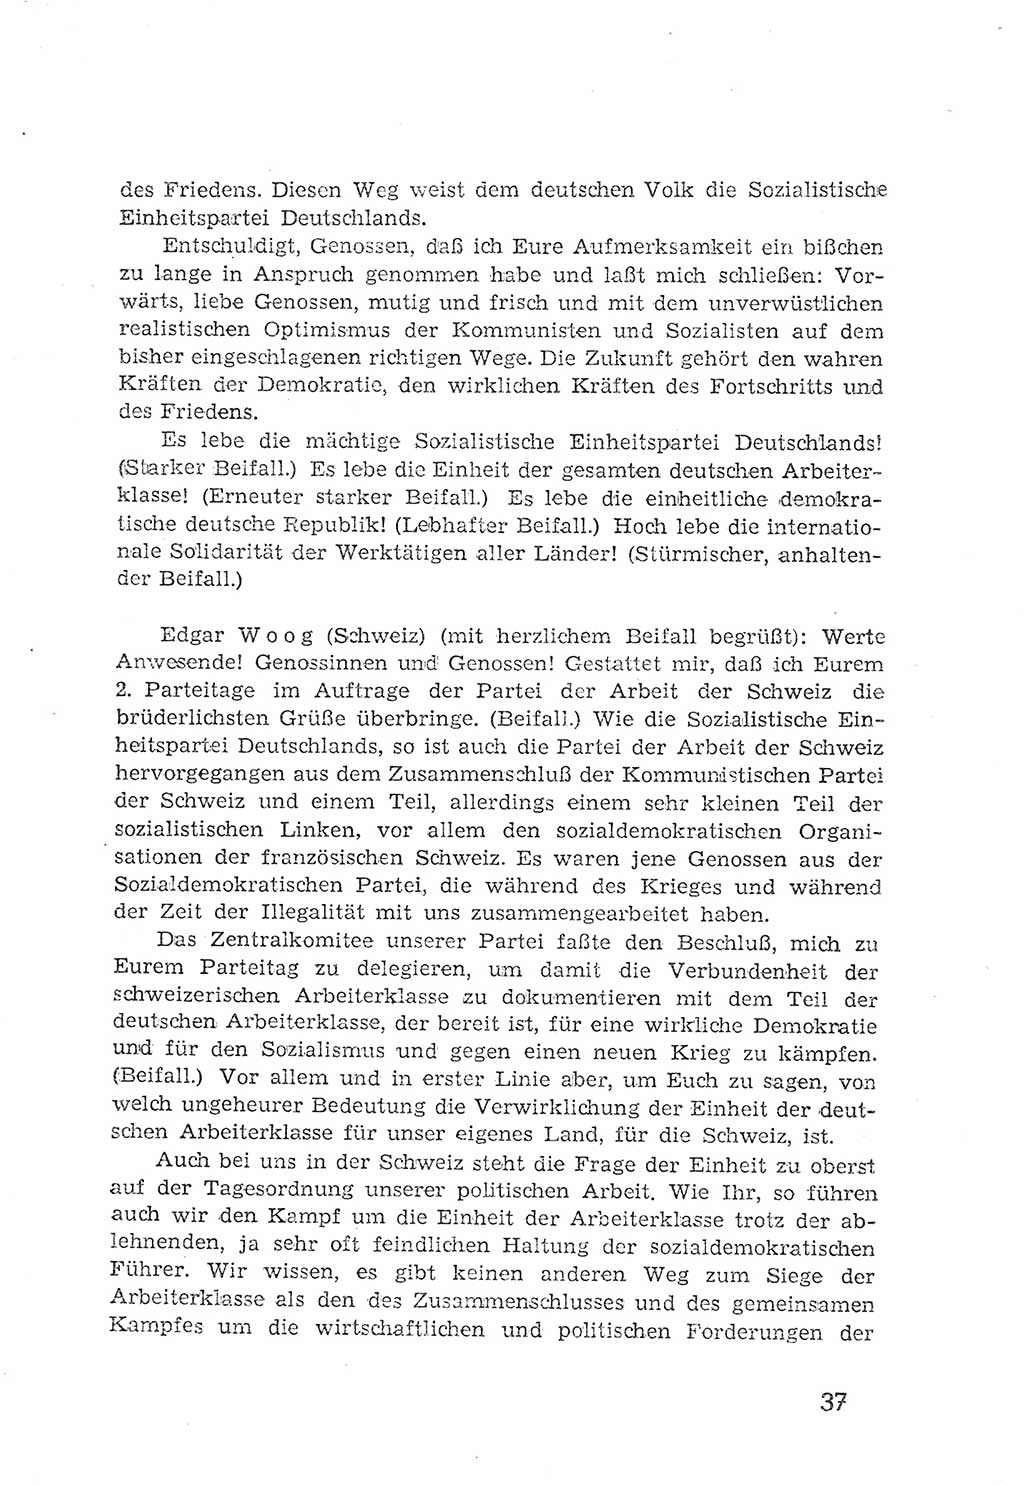 Protokoll der Verhandlungen des 2. Parteitages der Sozialistischen Einheitspartei Deutschlands (SED) [Sowjetische Besatzungszone (SBZ) Deutschlands] 1947, Seite 37 (Prot. Verh. 2. PT SED SBZ Dtl. 1947, S. 37)